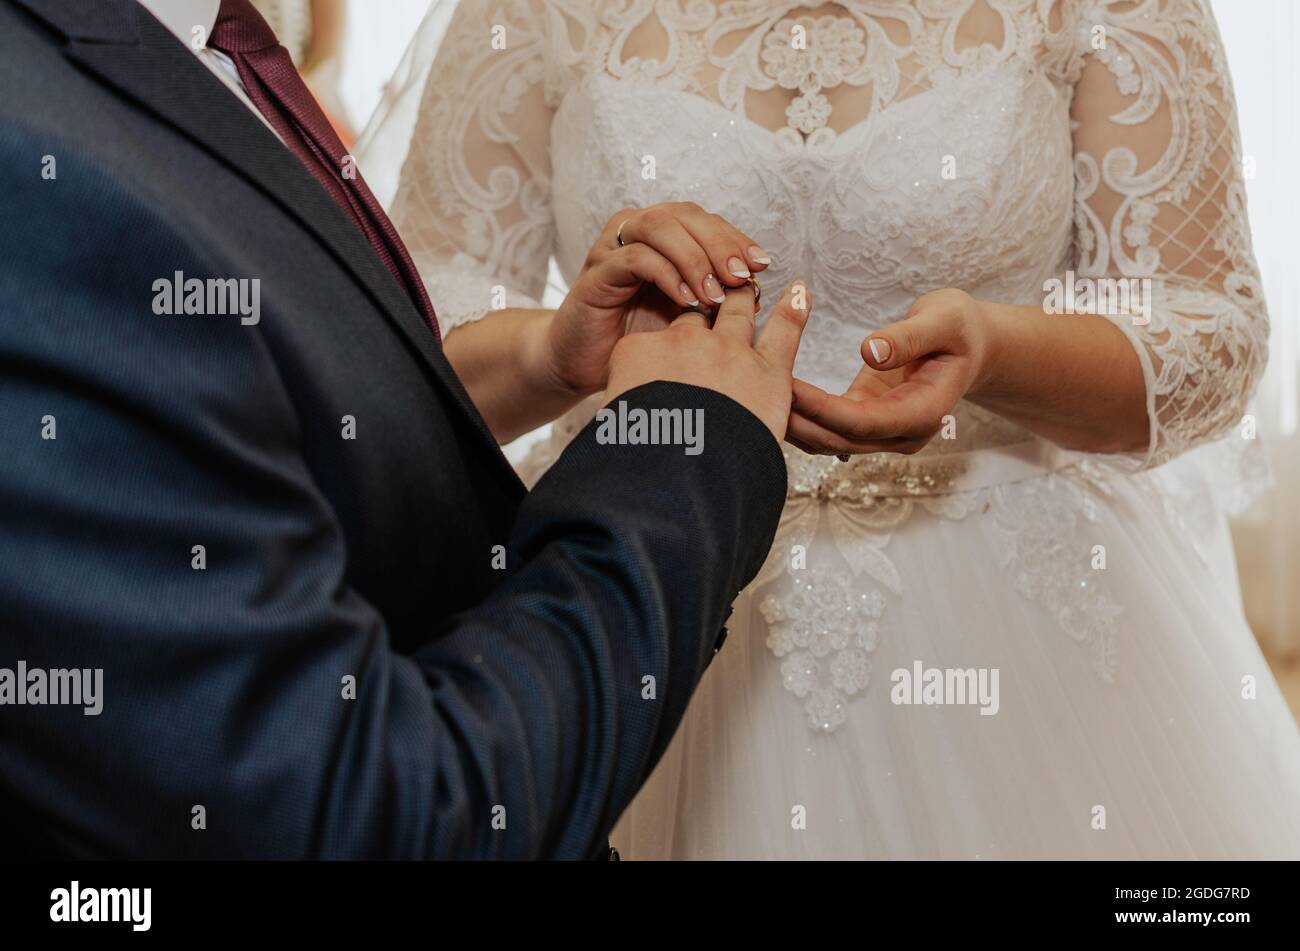 Die Braut und der Bräutigam tauschen die Ringe aus. Ein Mann legt einer  Frau einen Ehering an die Hand. Das Mädchen legte Ring auf den Mann.  Offizielle Hochzeitszeremonie im Register Stockfotografie -